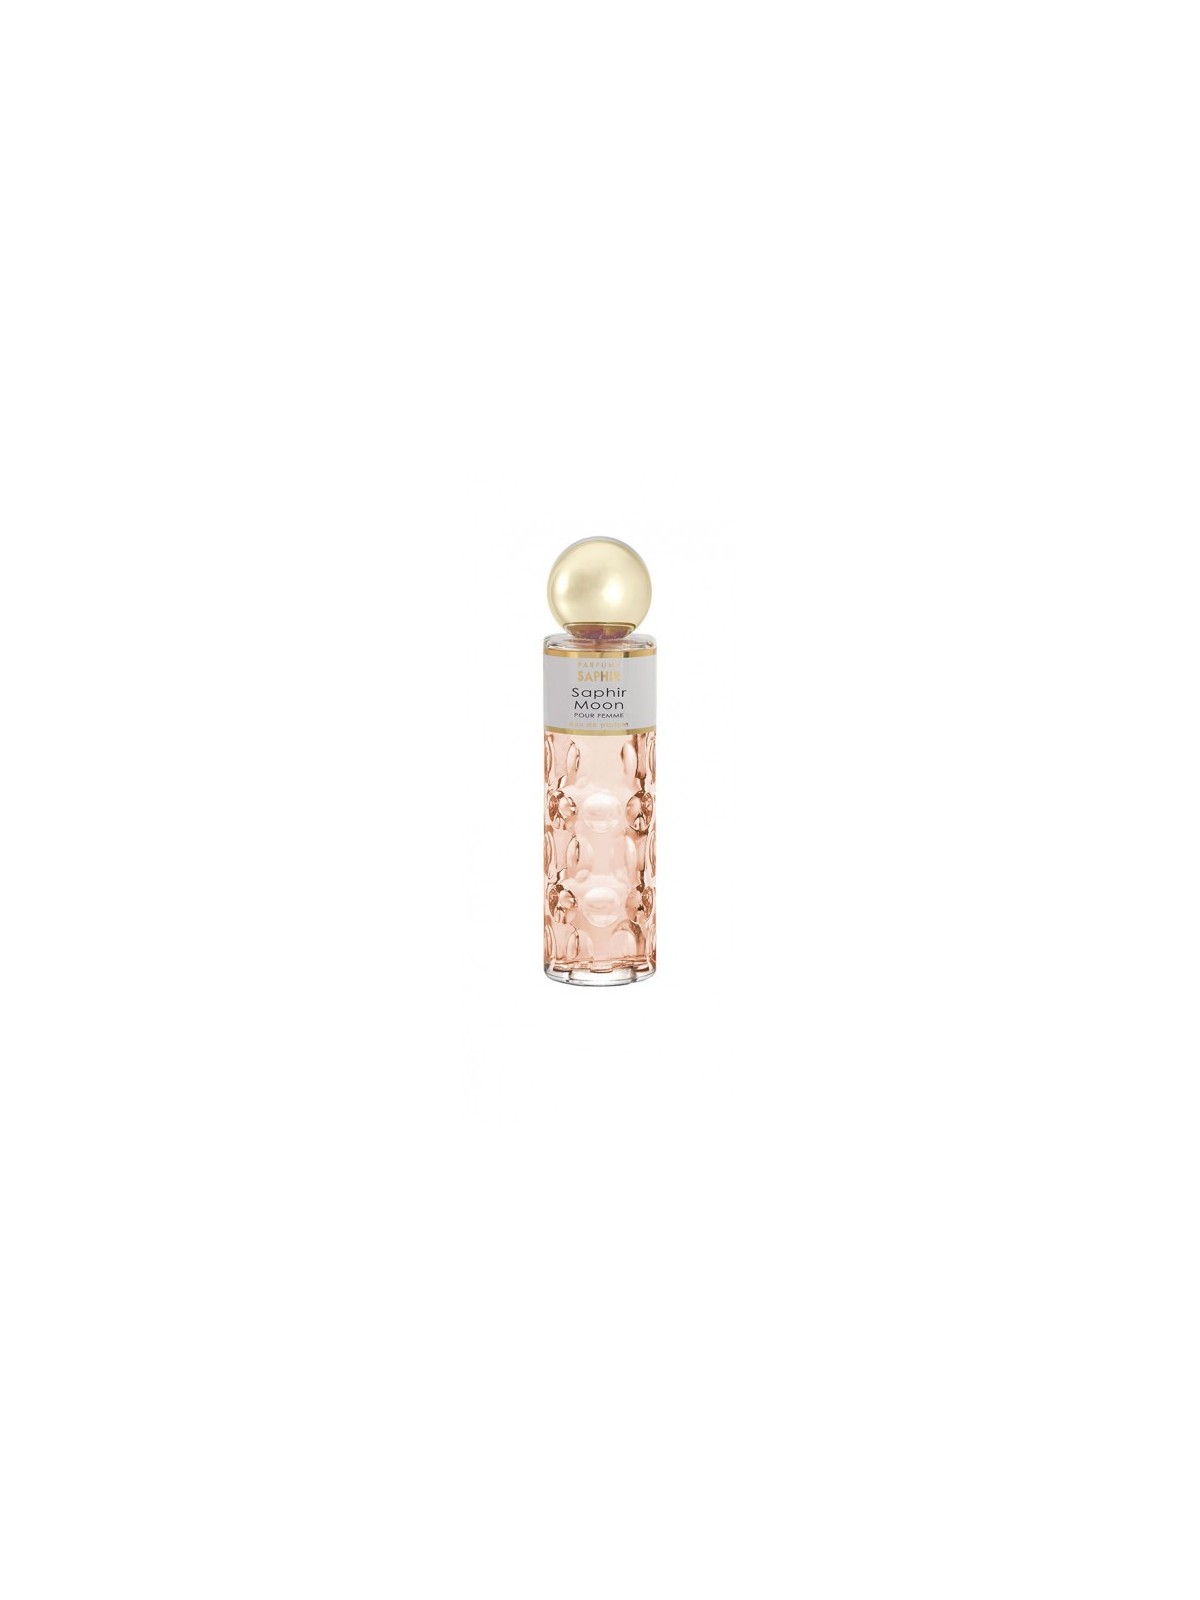 Comprar Perfume Saphir Moon 200ml en Perfumes para mujer por sólo 13,90 € o un precio específico de 13,90 € en Thalie Care